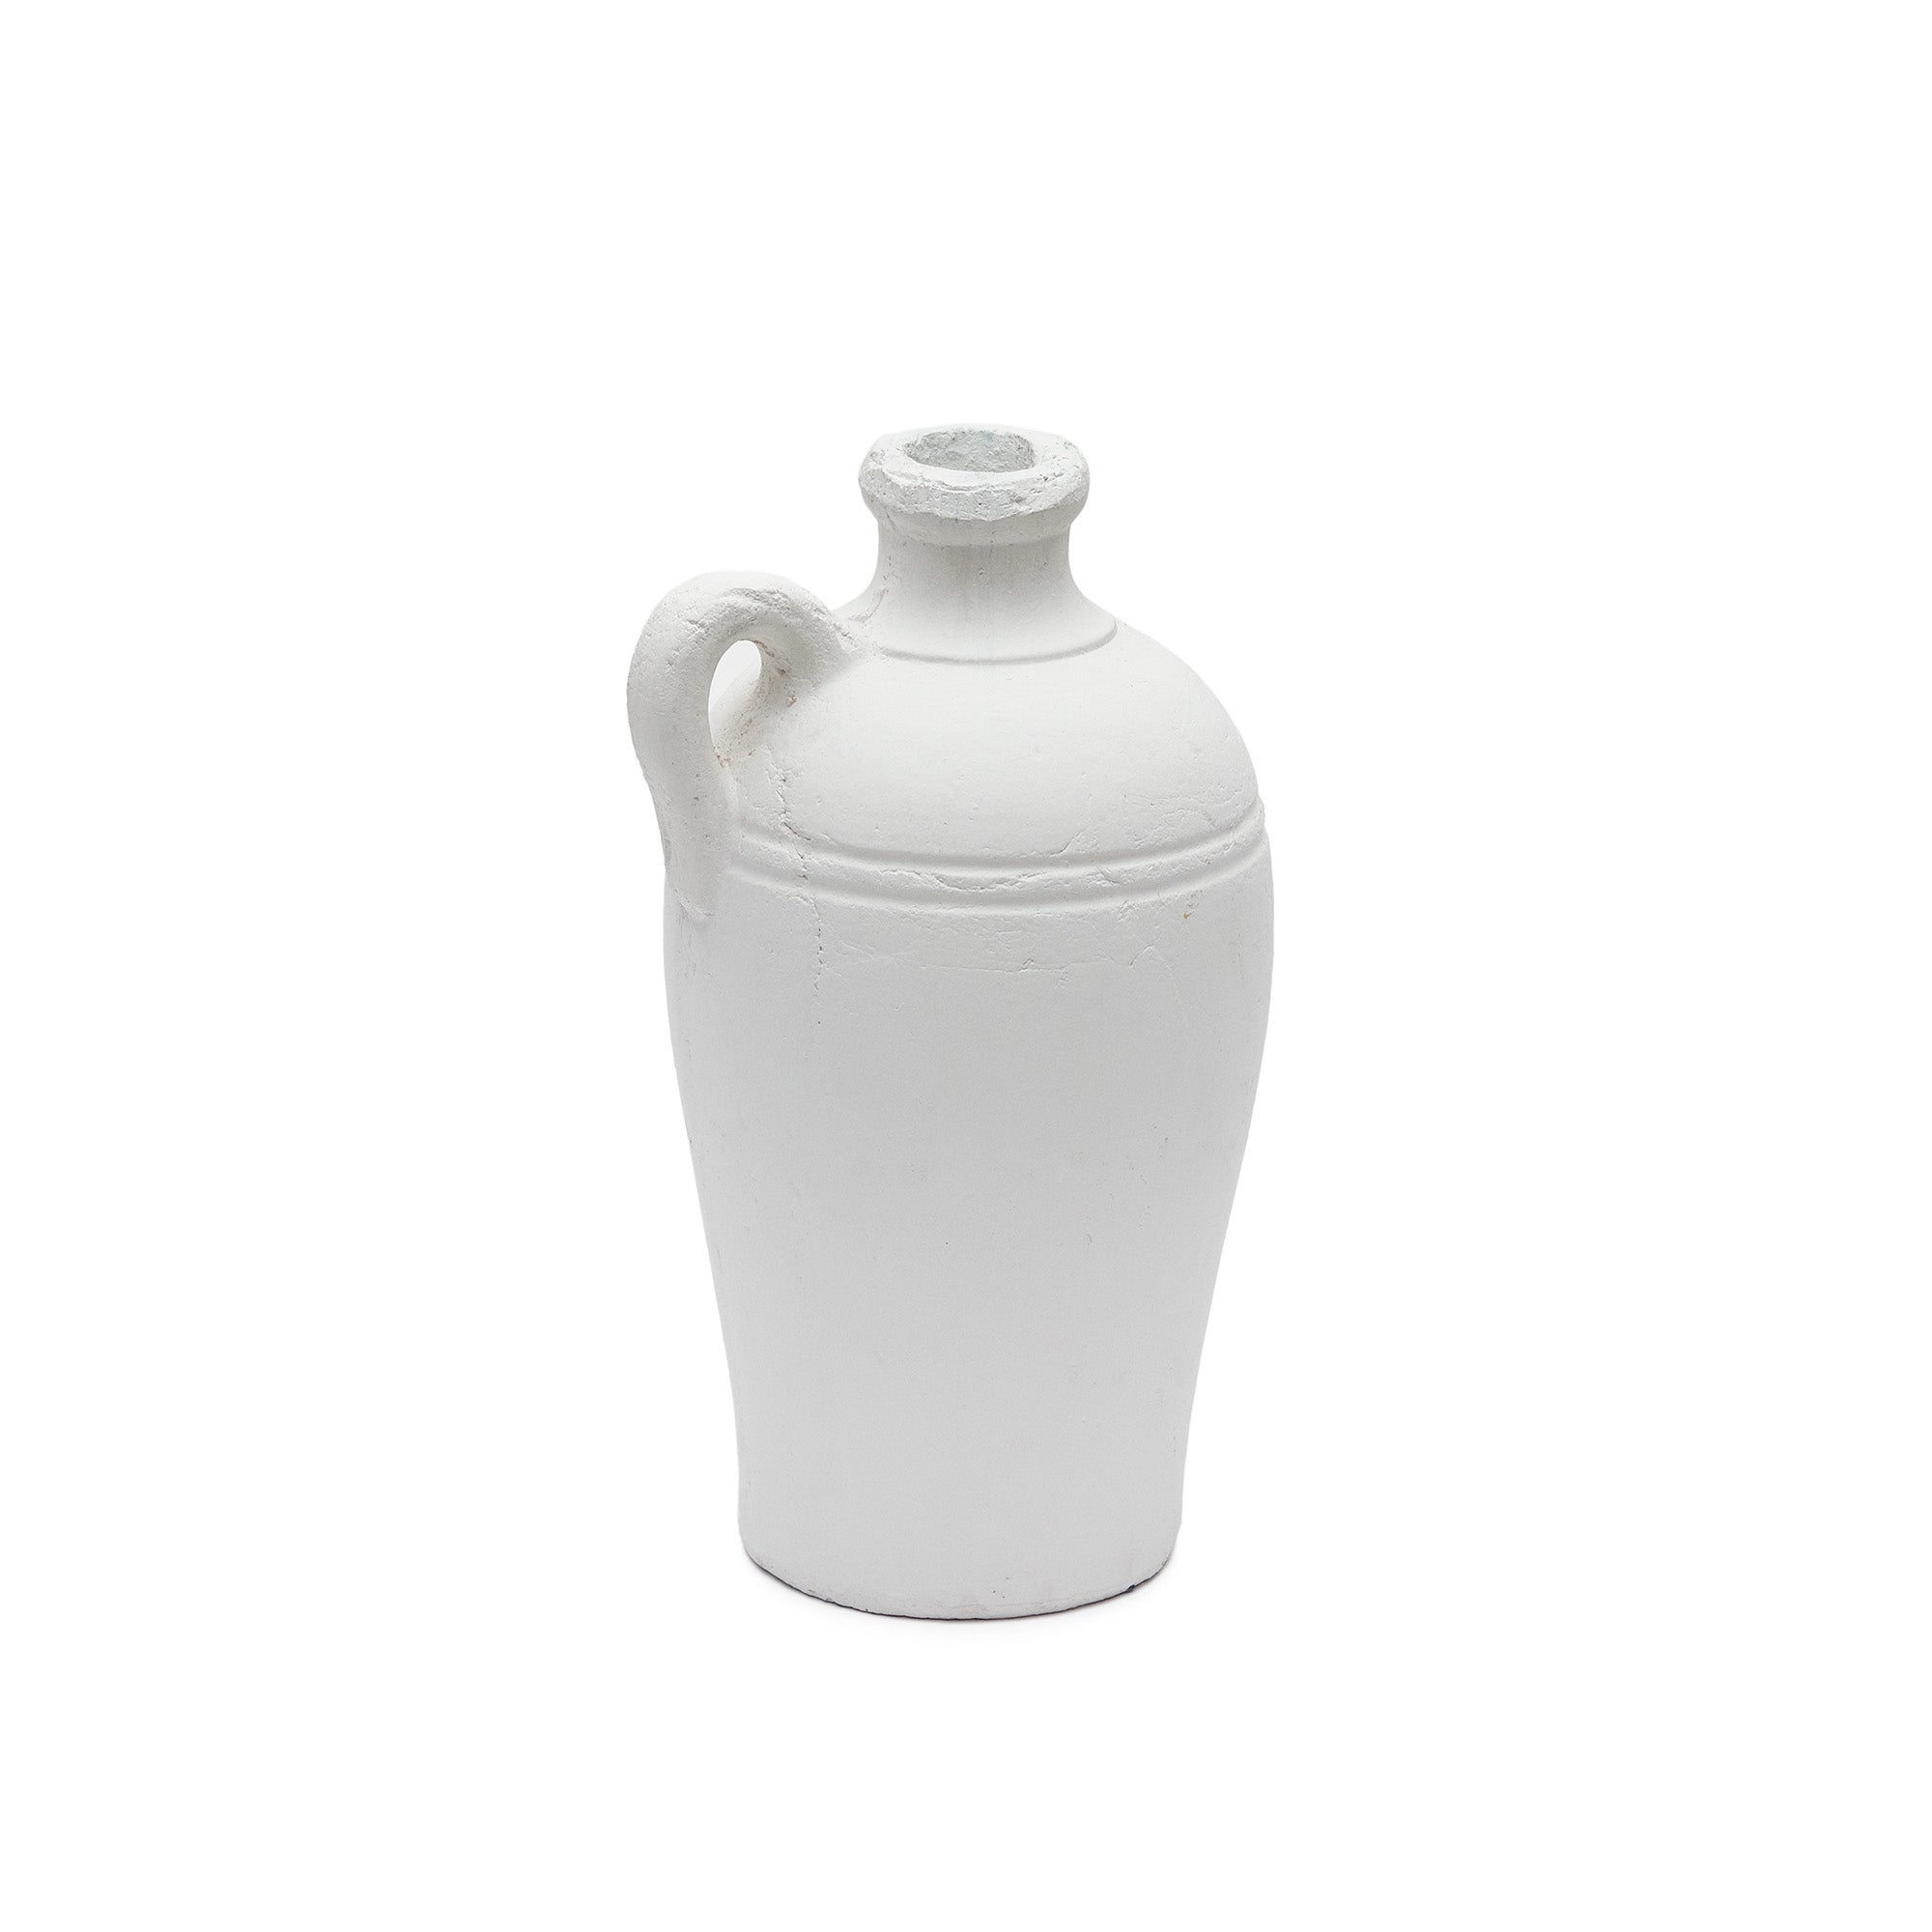 Palafrugell terracotta vase in white, 36.5 cm